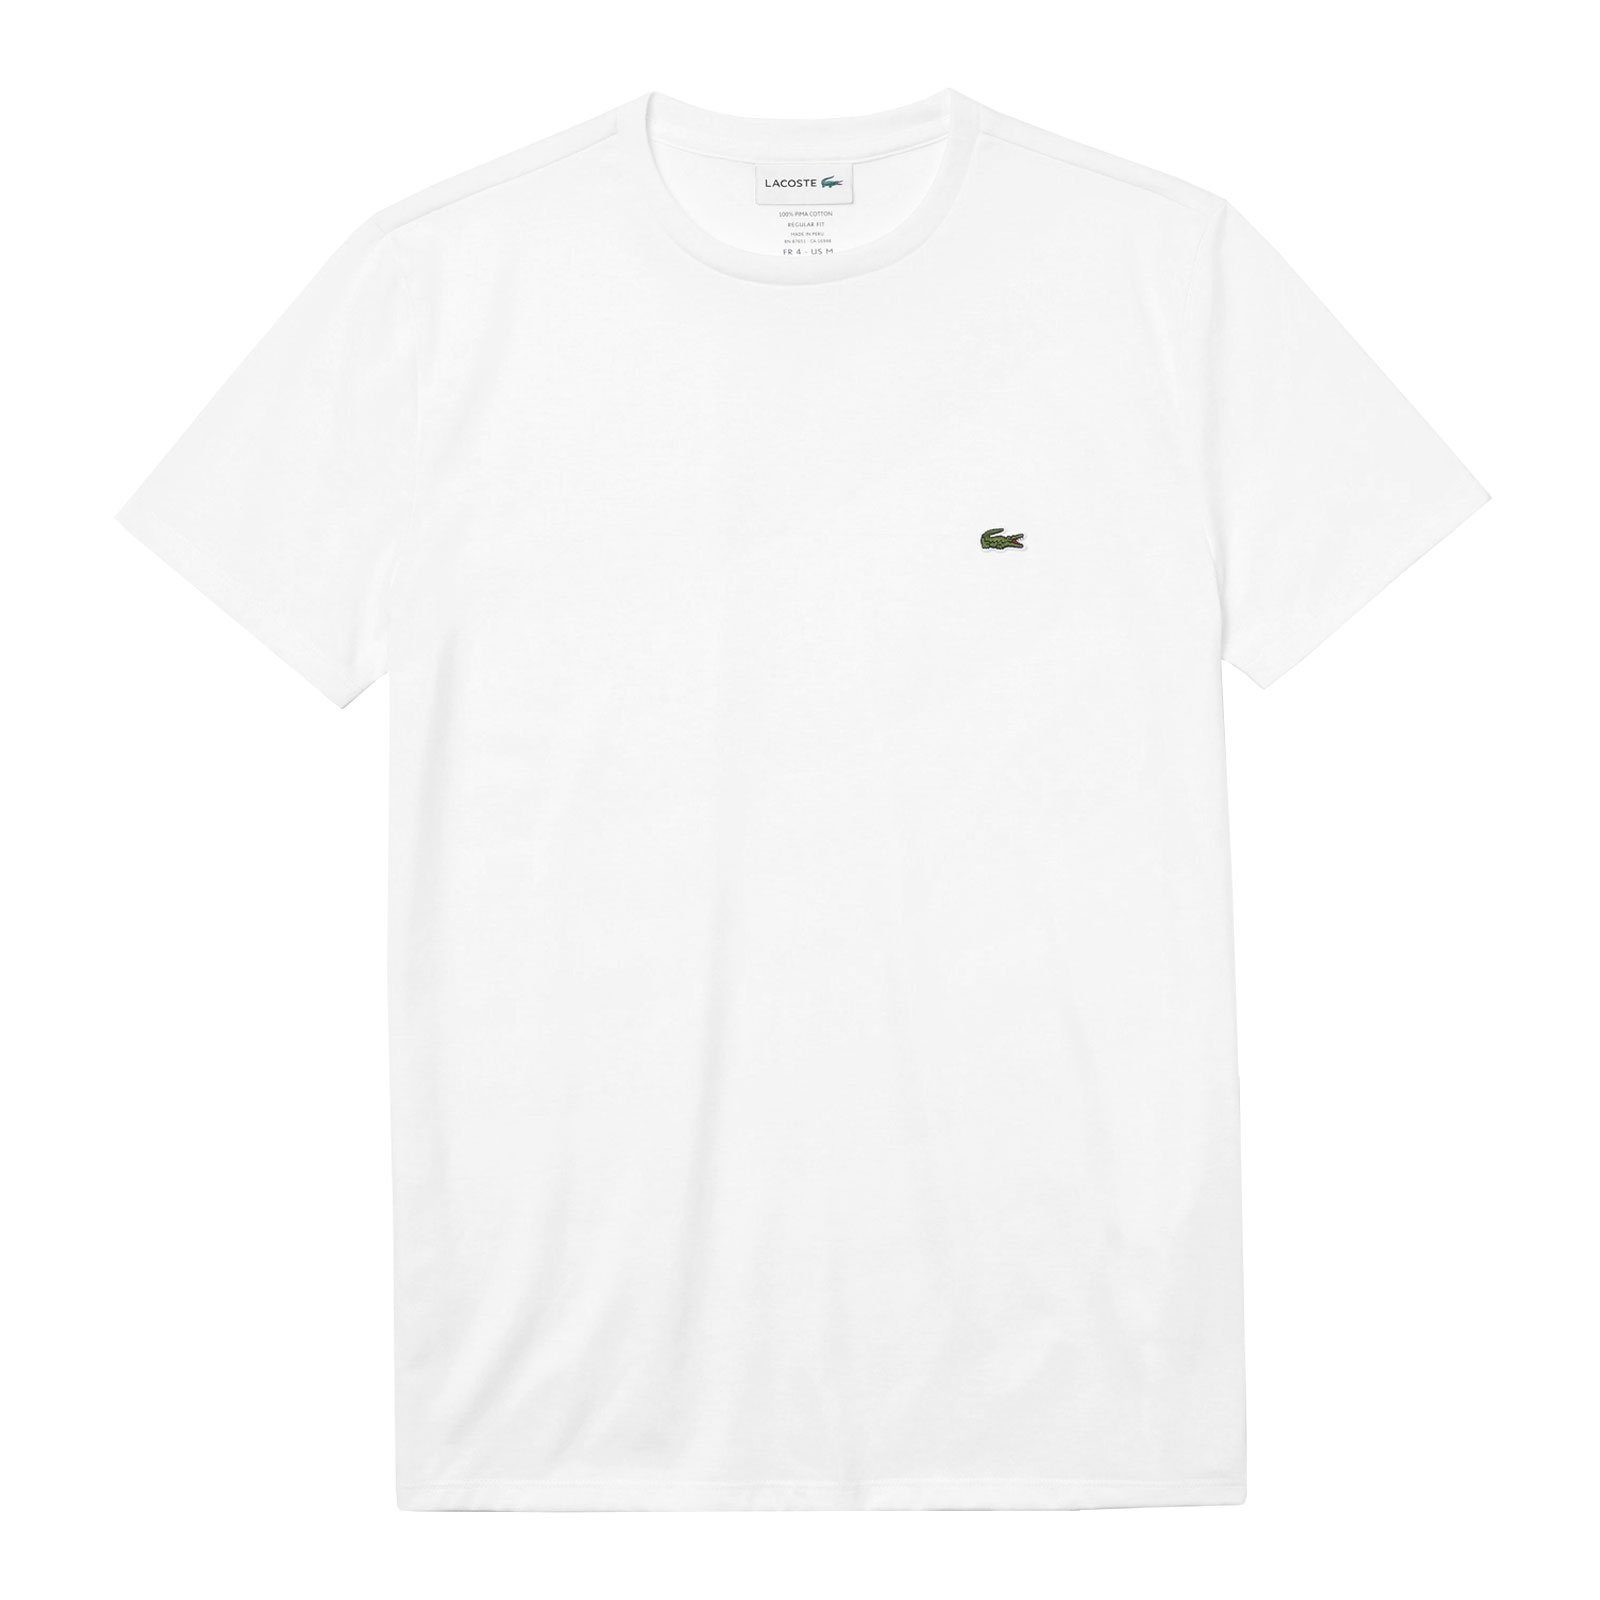 Neck Crew Cotton white kleinem T-Shirt 001 Lacoste Brust auf der mit Krokodil